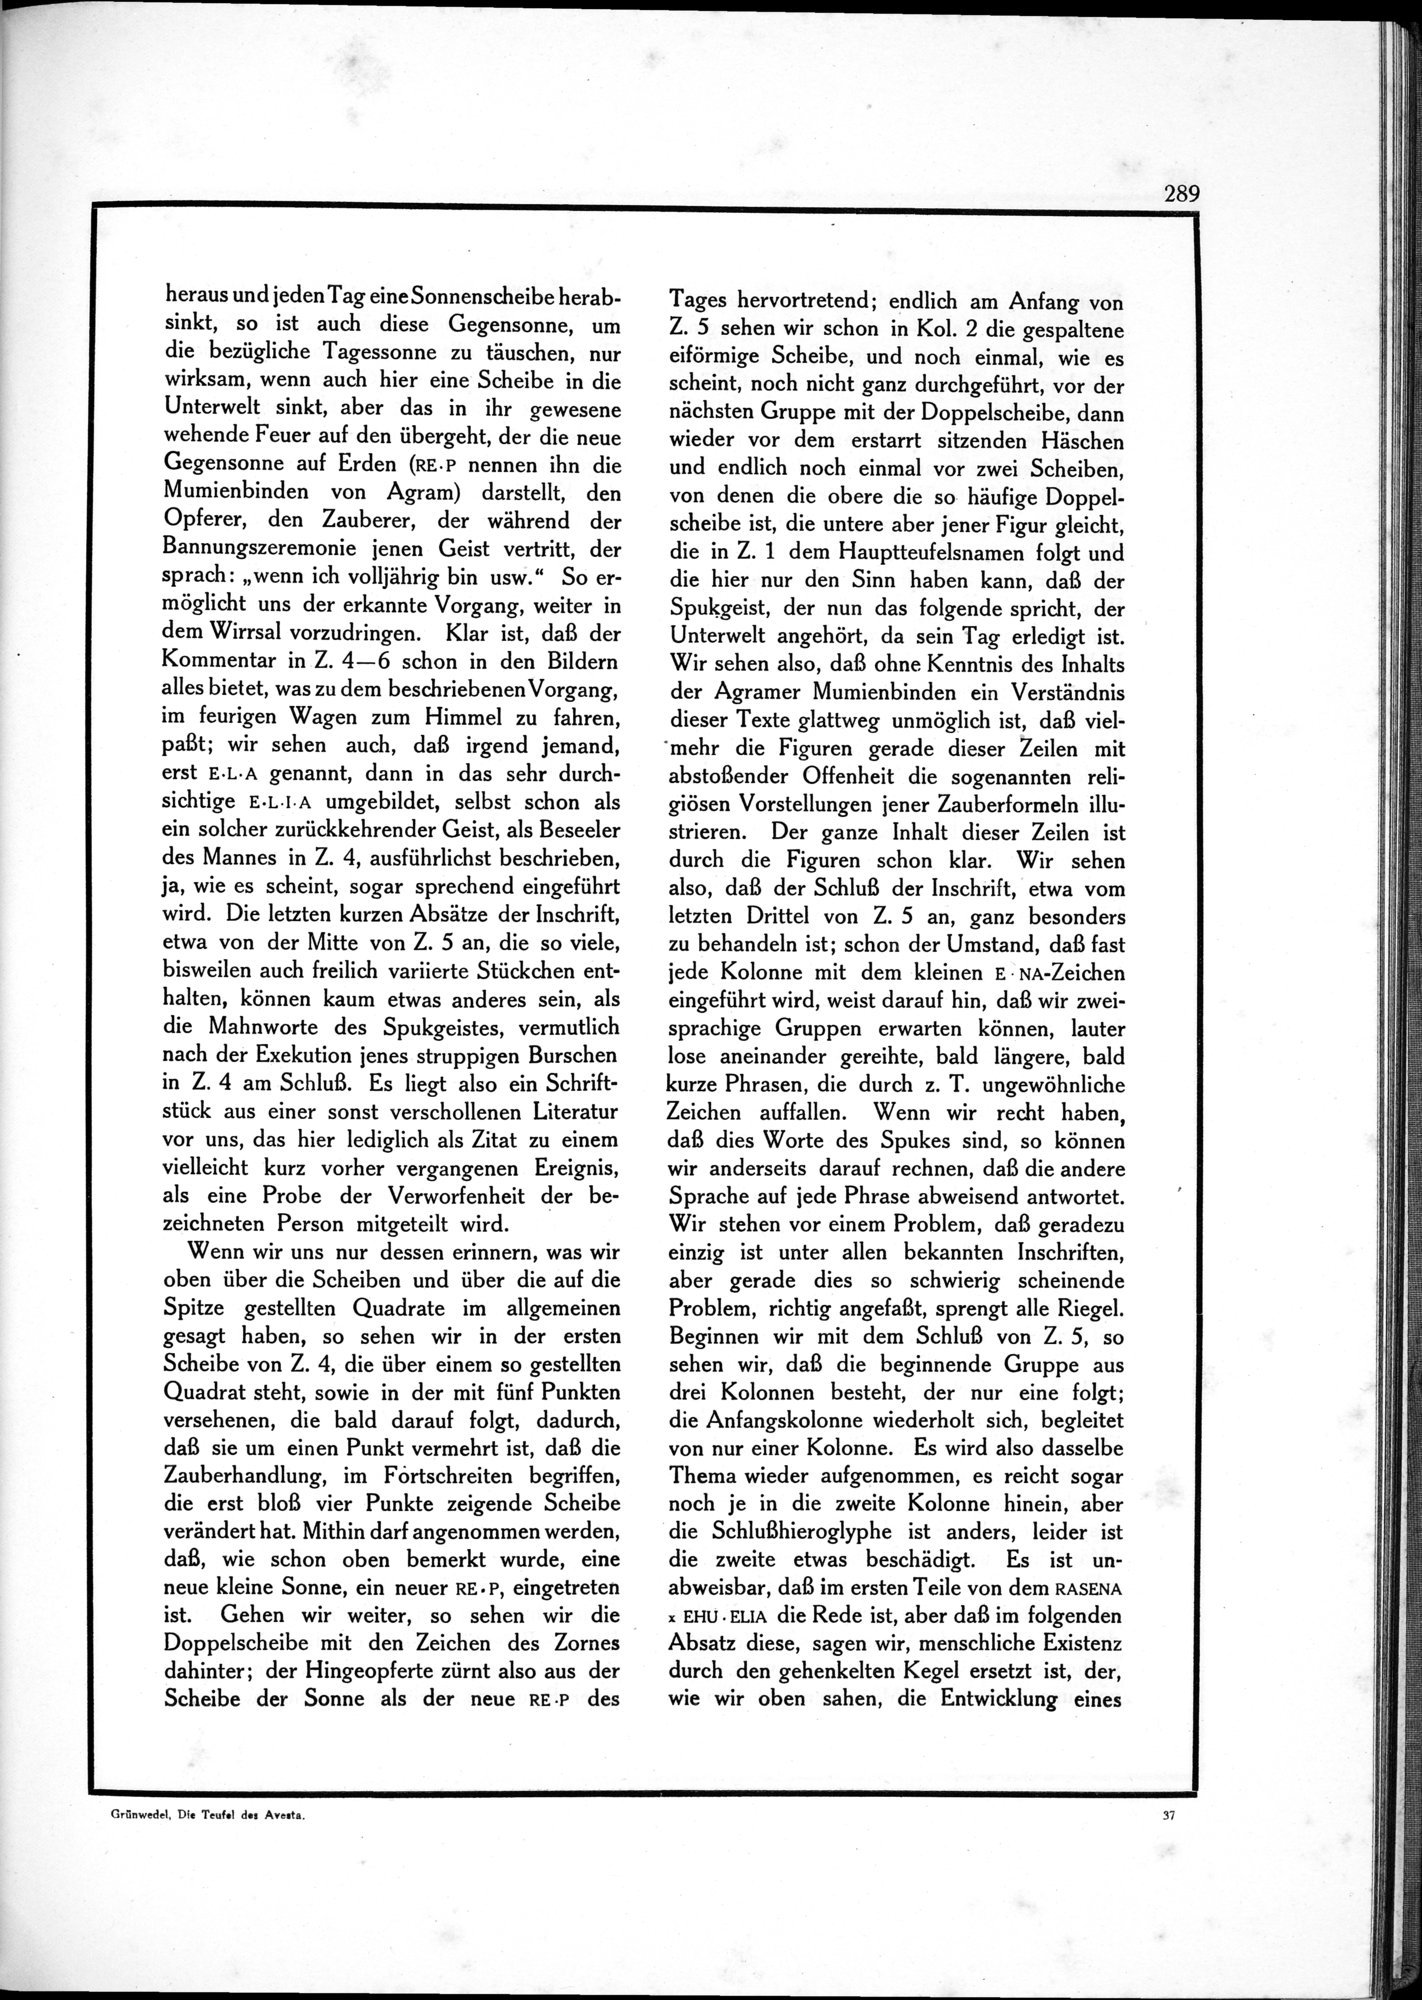 Die Teufel des Avesta und Ihre Beziehungen zur Ikonographie des Buddhismus Zentral-Asiens : vol.1 / Page 293 (Grayscale High Resolution Image)